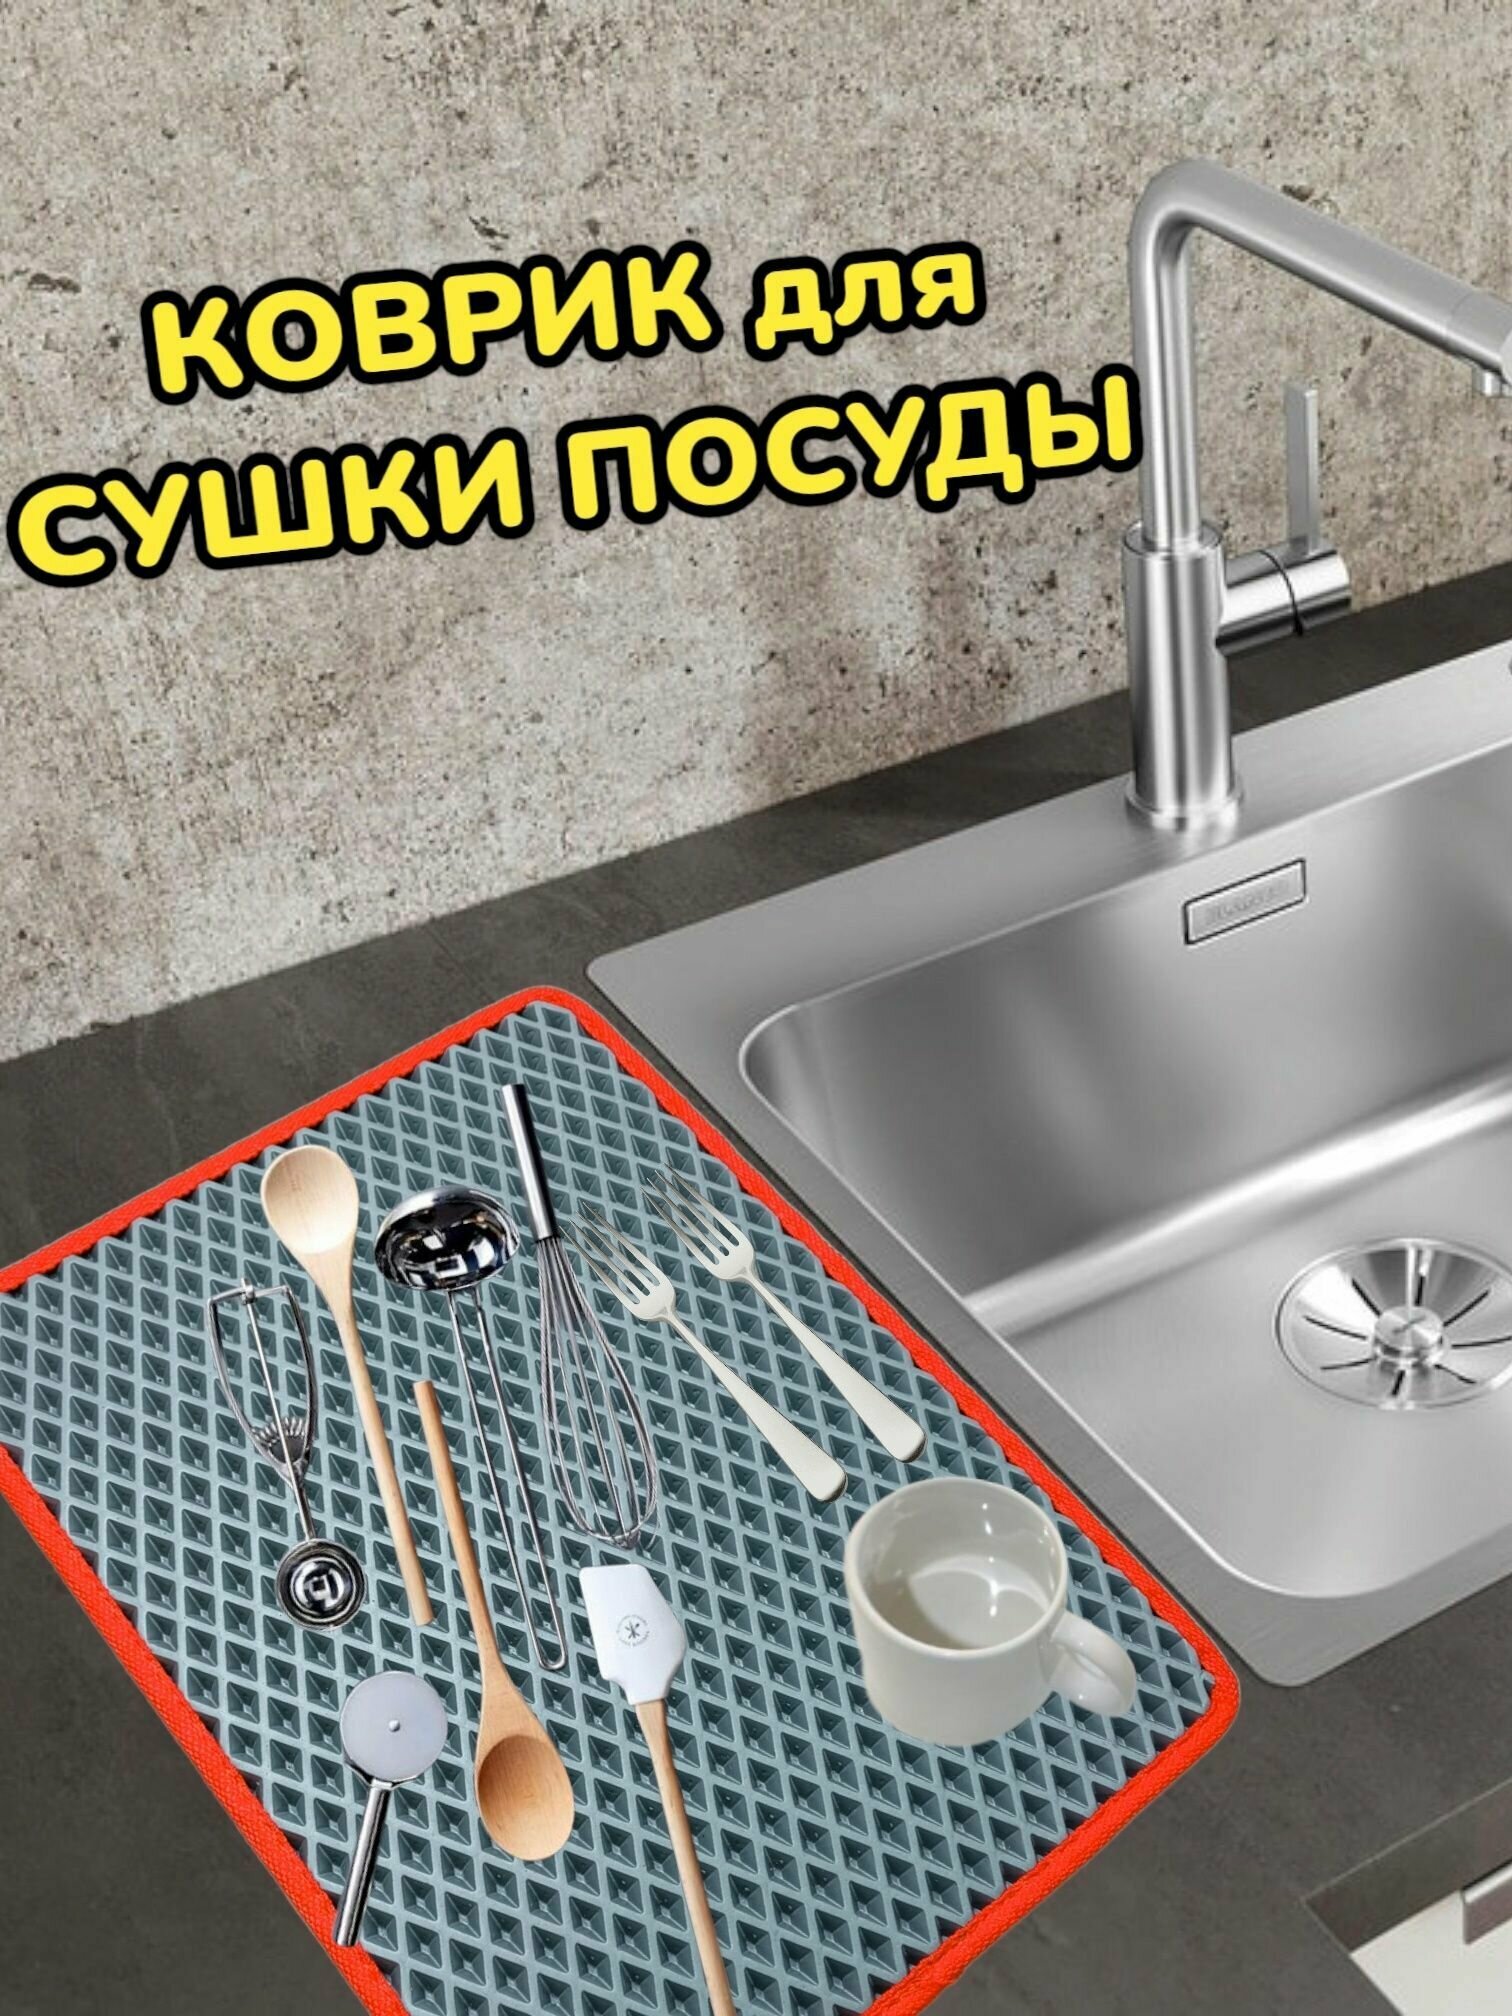 Коврик для сушки посуды / Поддон для сушилки посуды / 50 см х 20 см х 1 см / Серый с красным кантом